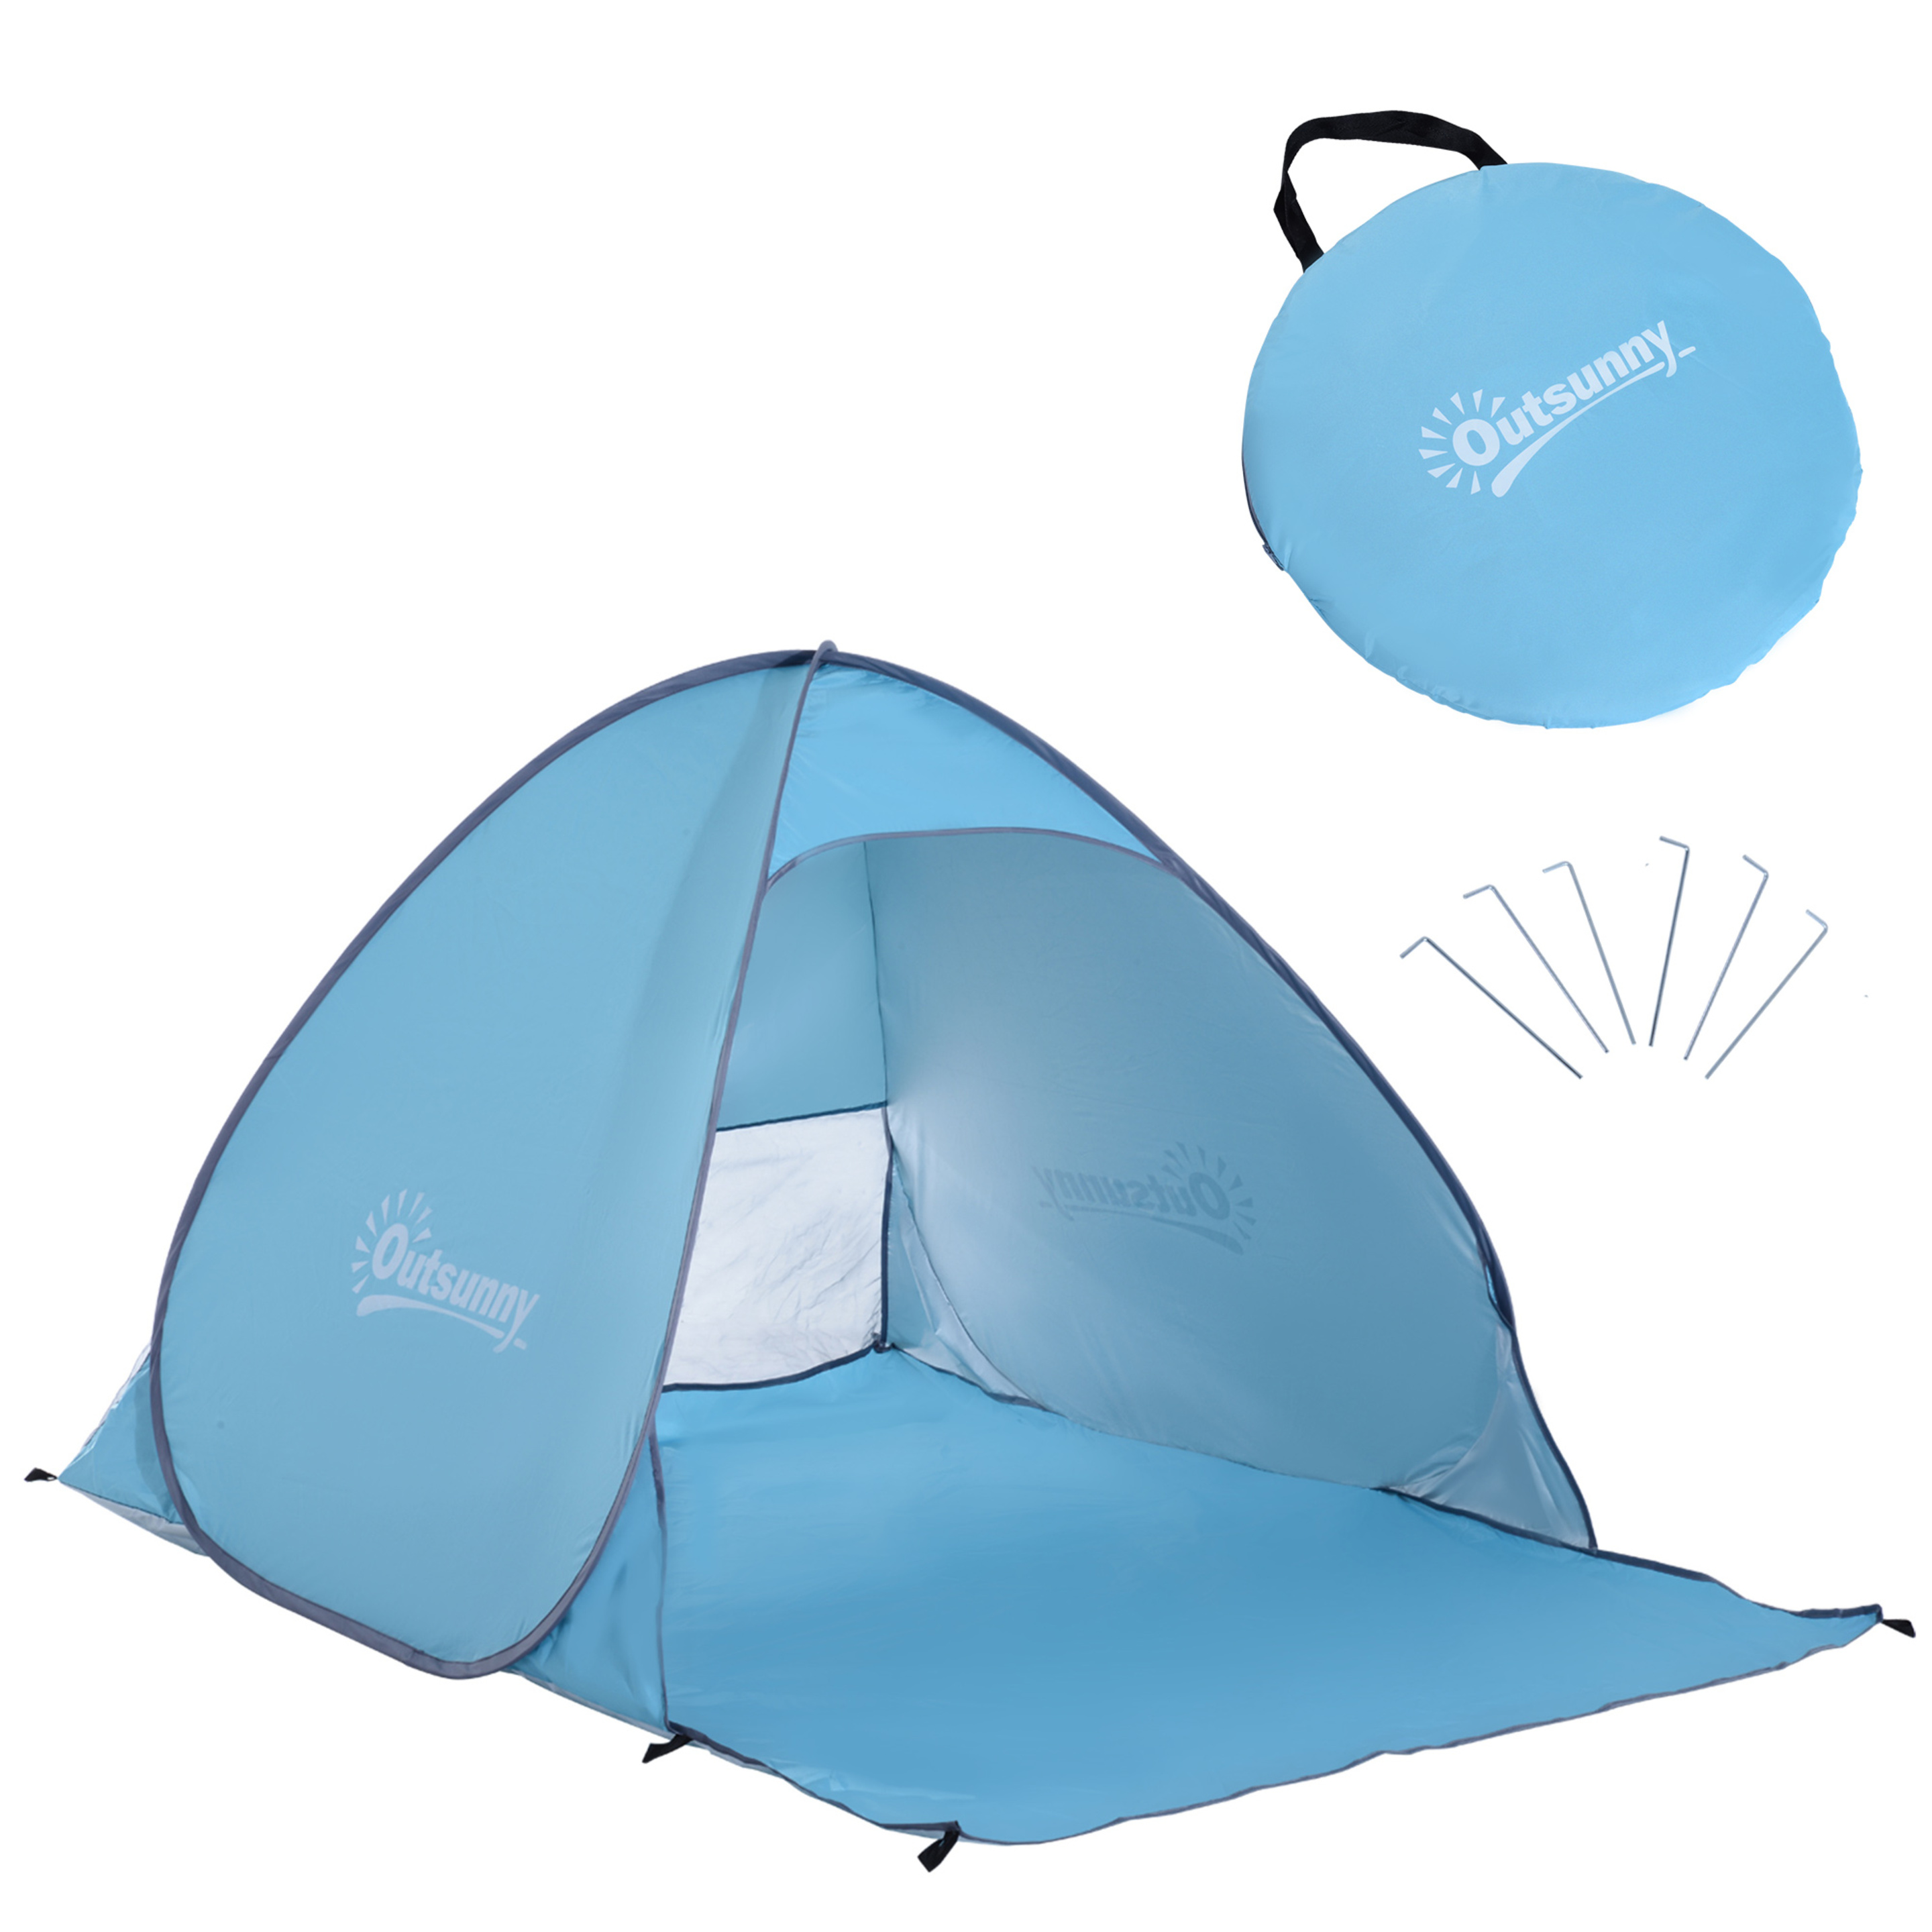 Tenda Acampamento Outsunny A20-036bu - azul - 